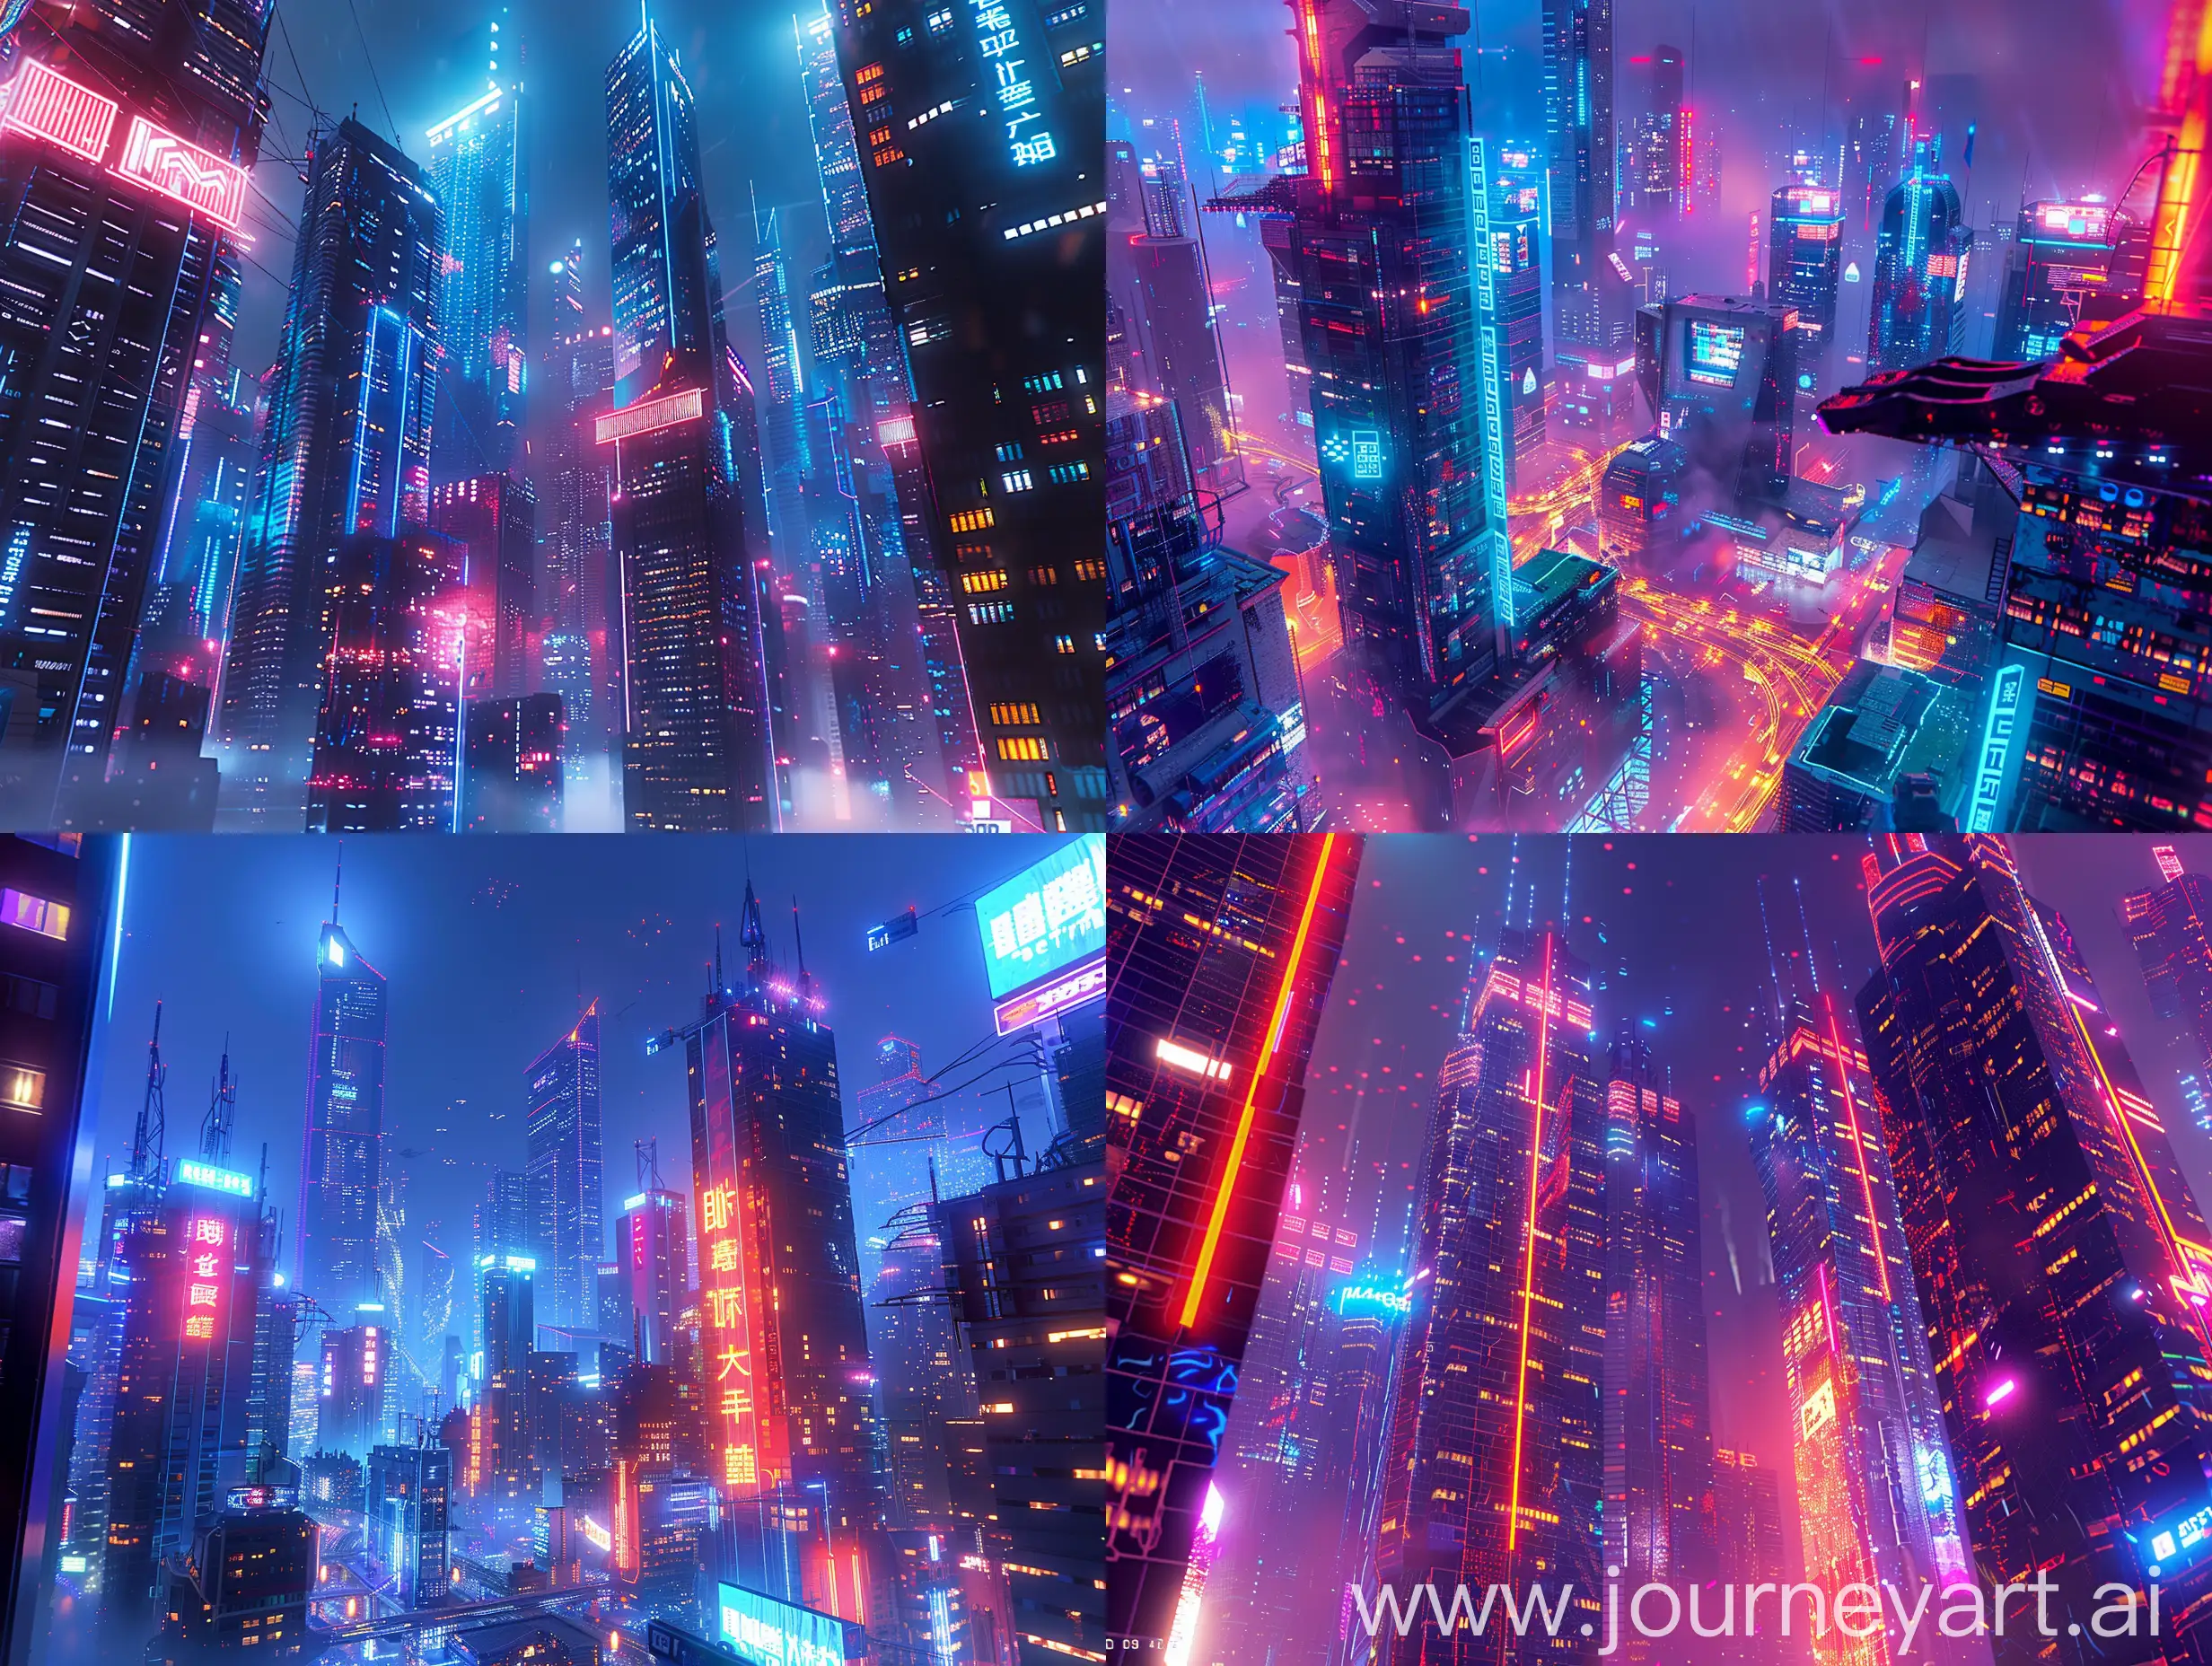 Futuristic-Cyberpunk-Cityscape-with-Neon-Skyscrapers-at-Night